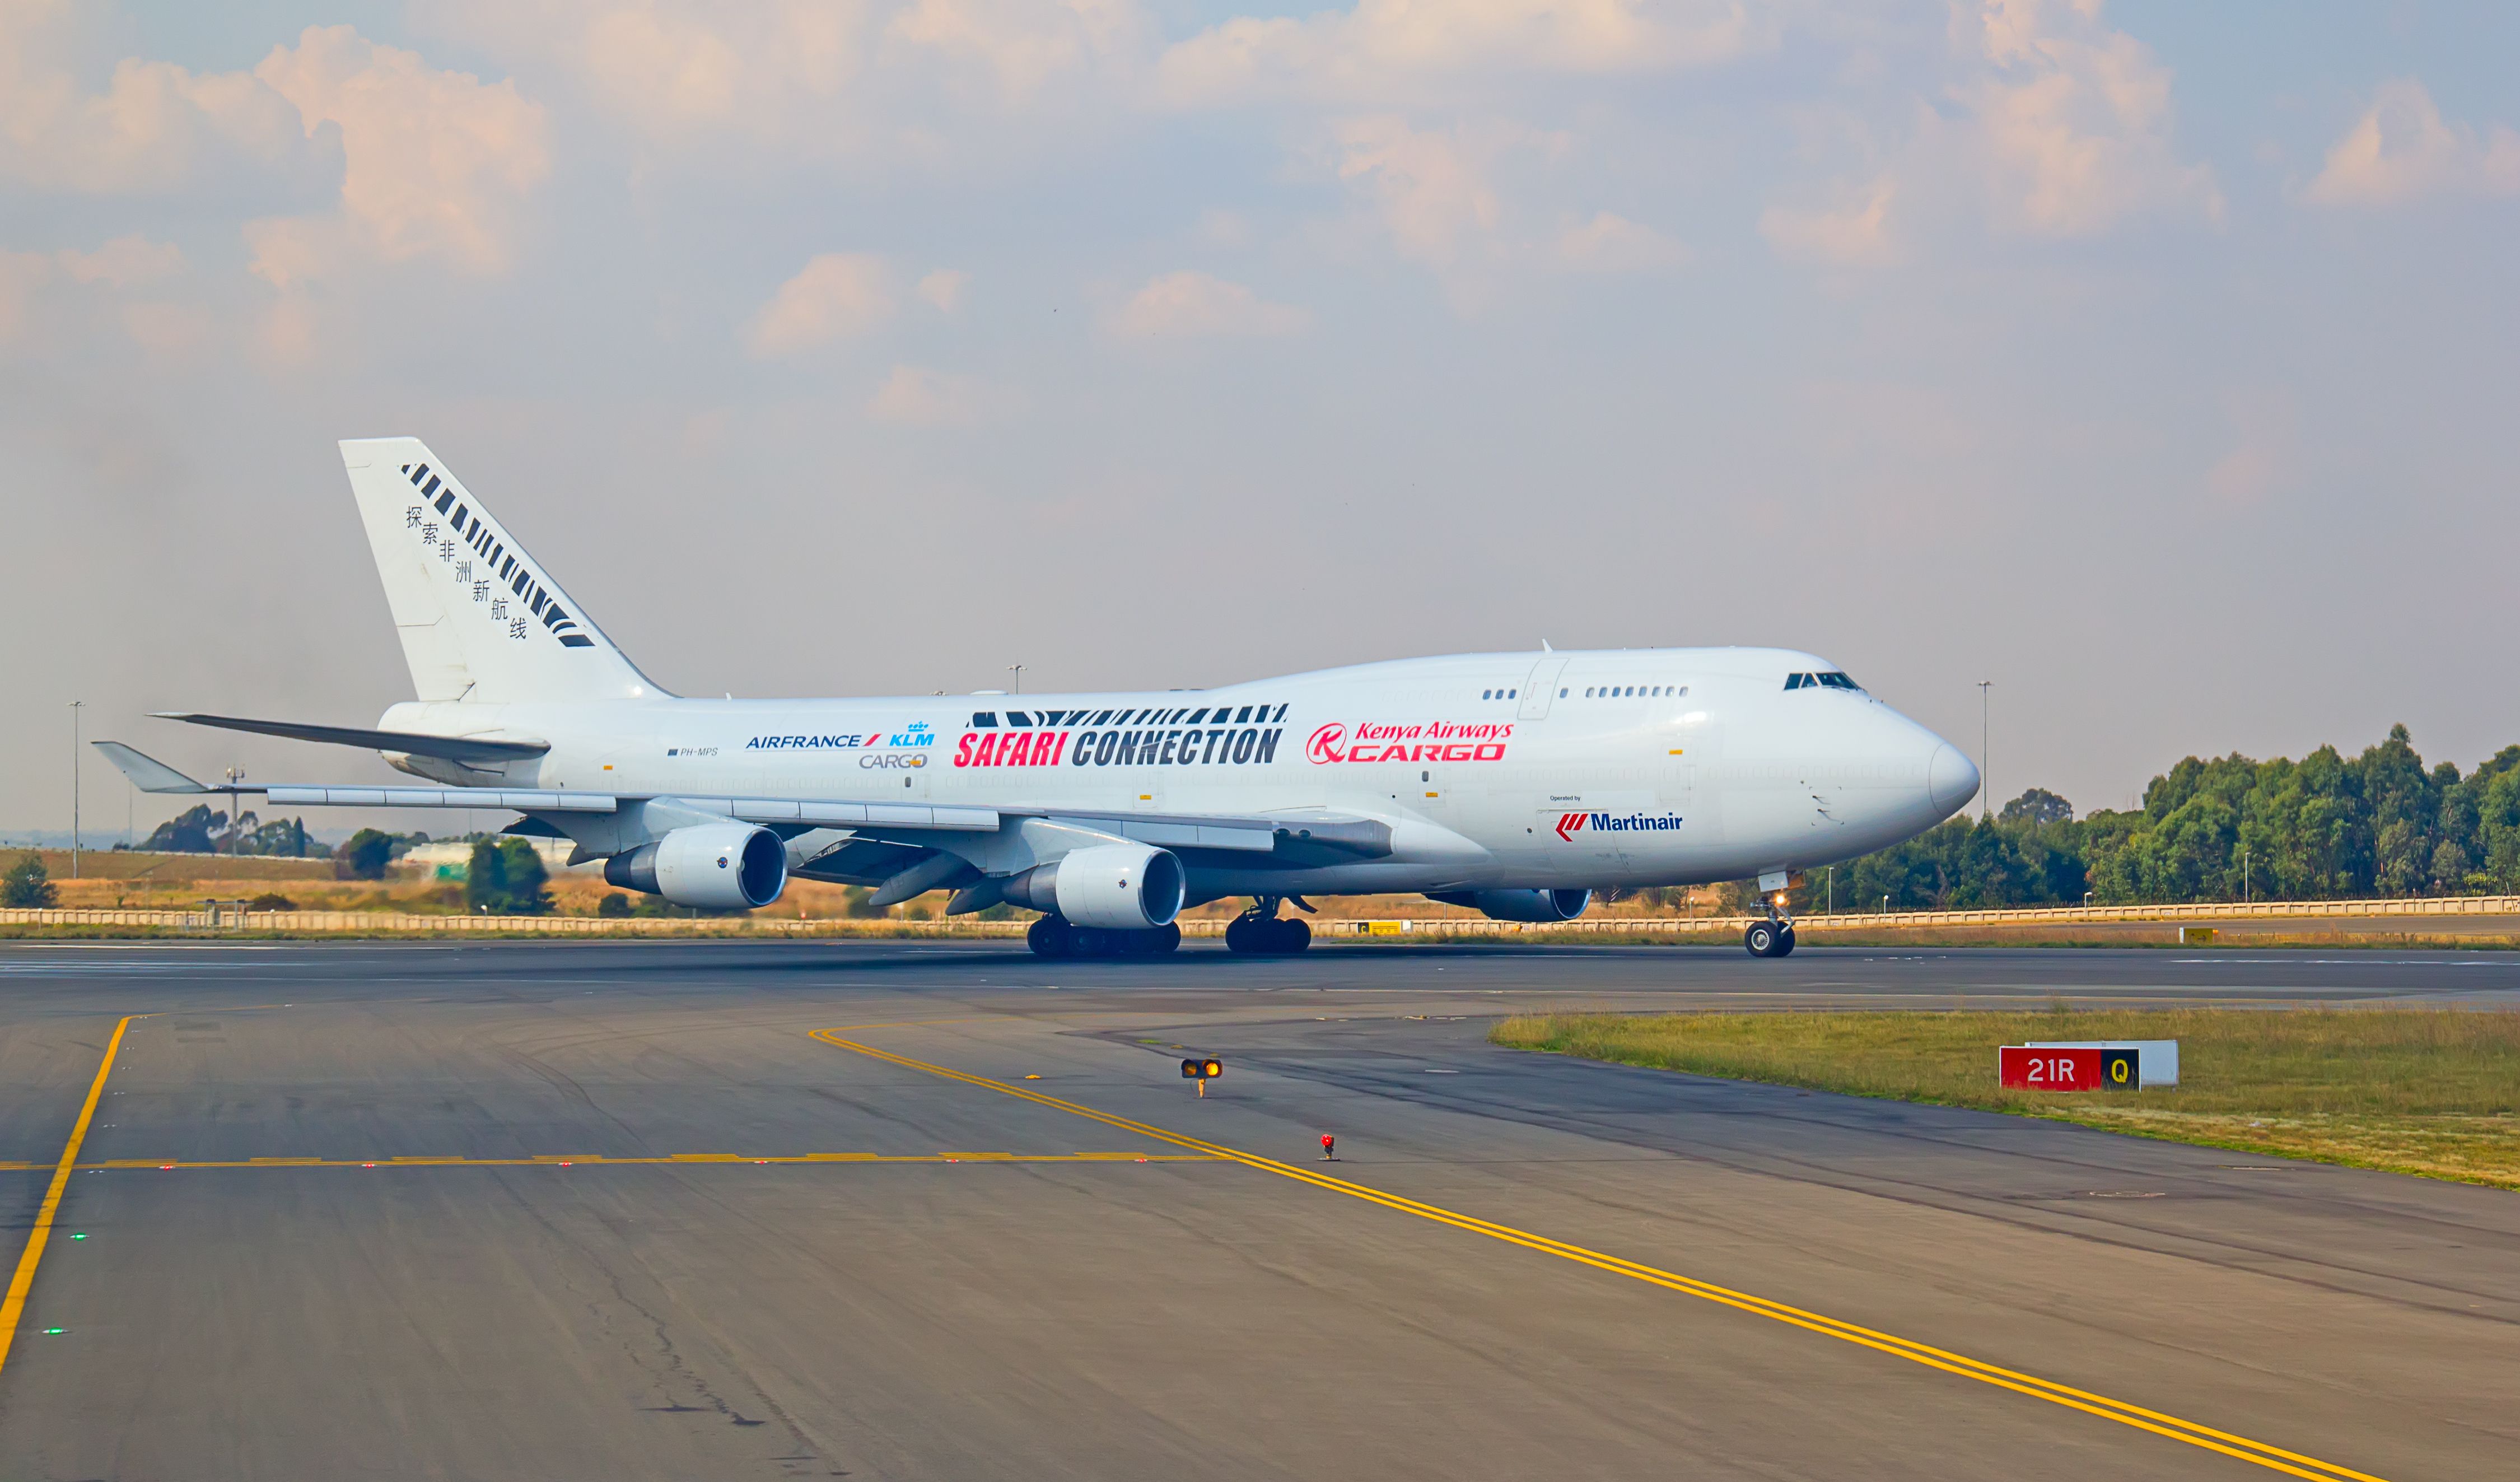 Kenya Airways Cargo Boeing 747 at Johannesburg Airport